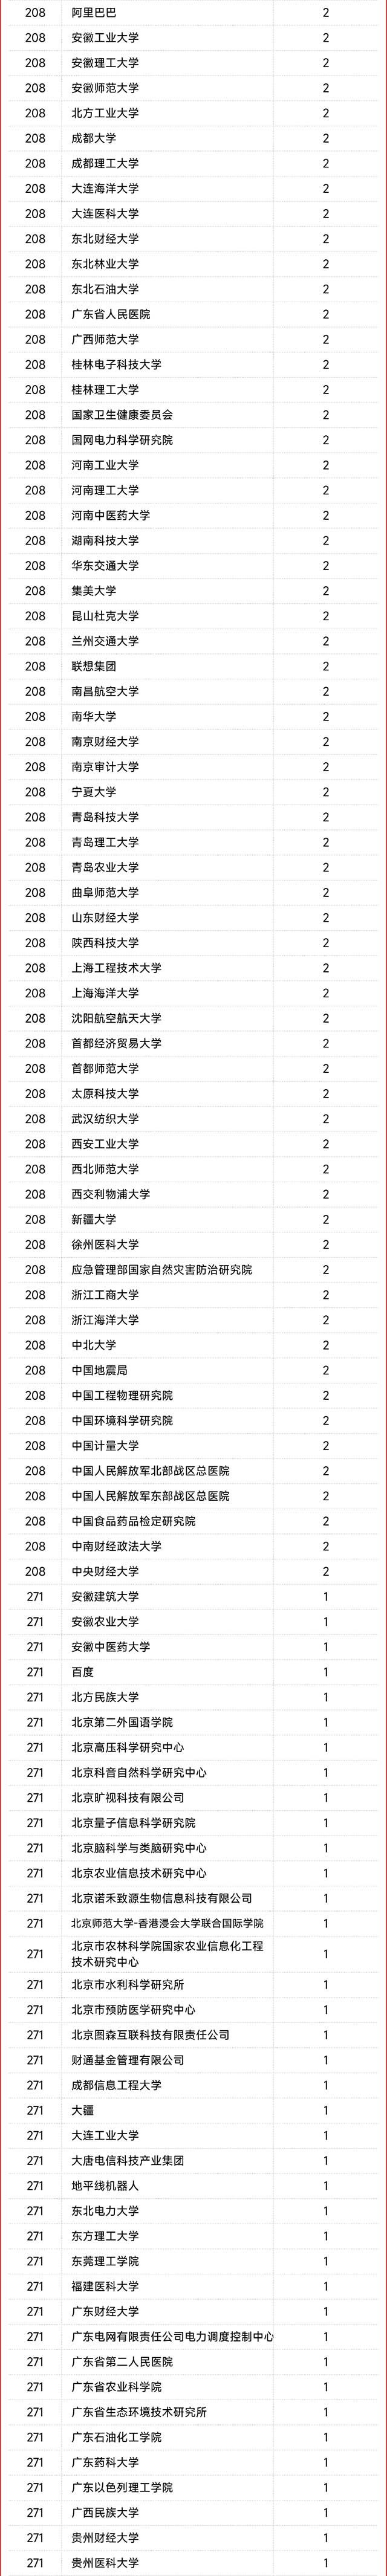 2022年中国高被引学者统计